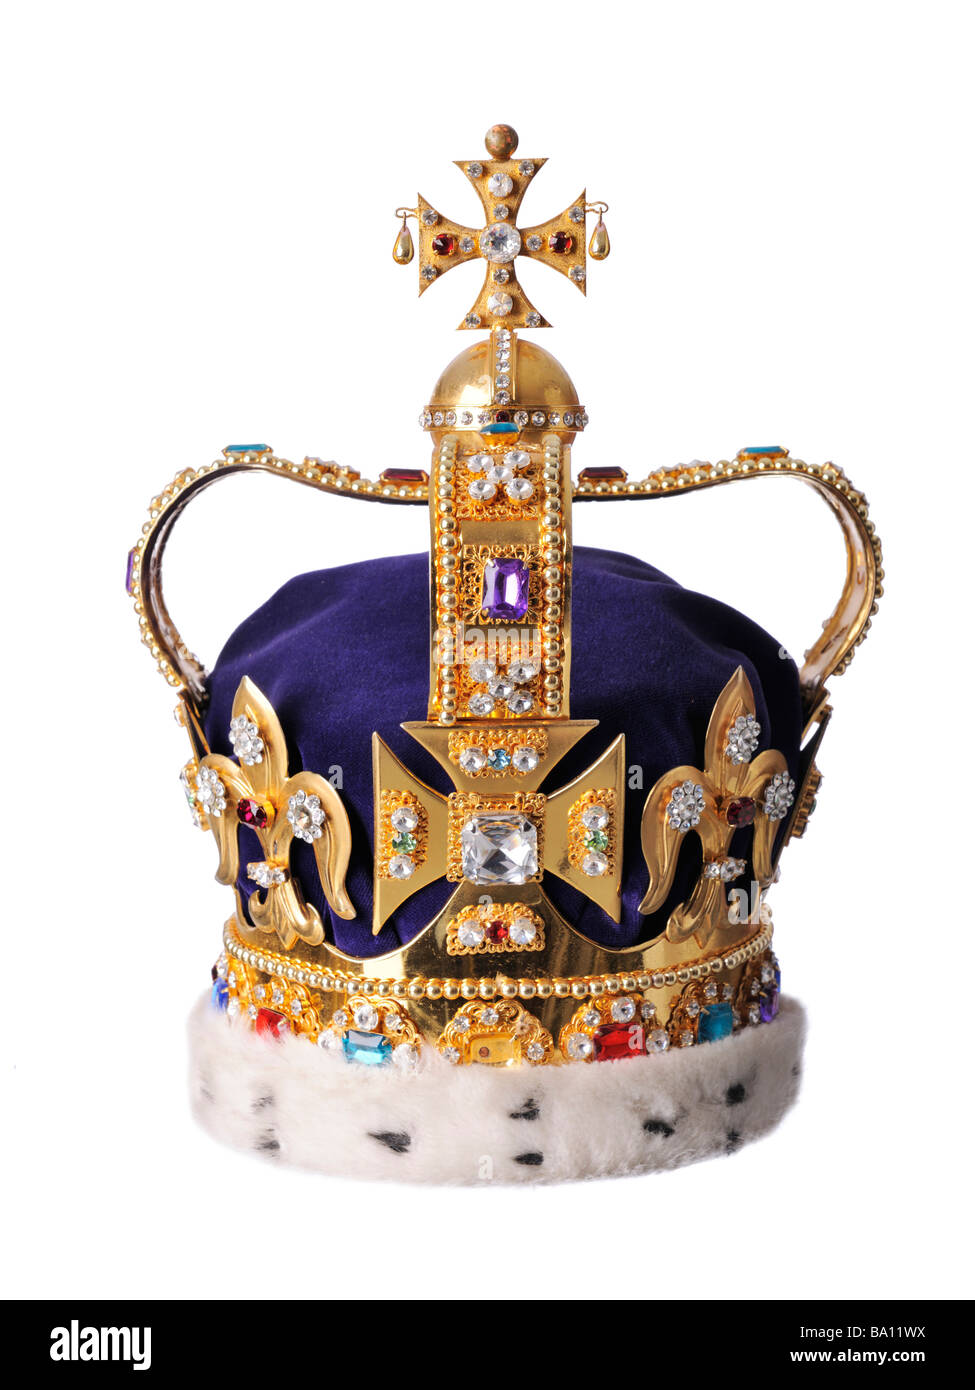 King's Royal Crown, St Edwards Crown Foto de stock